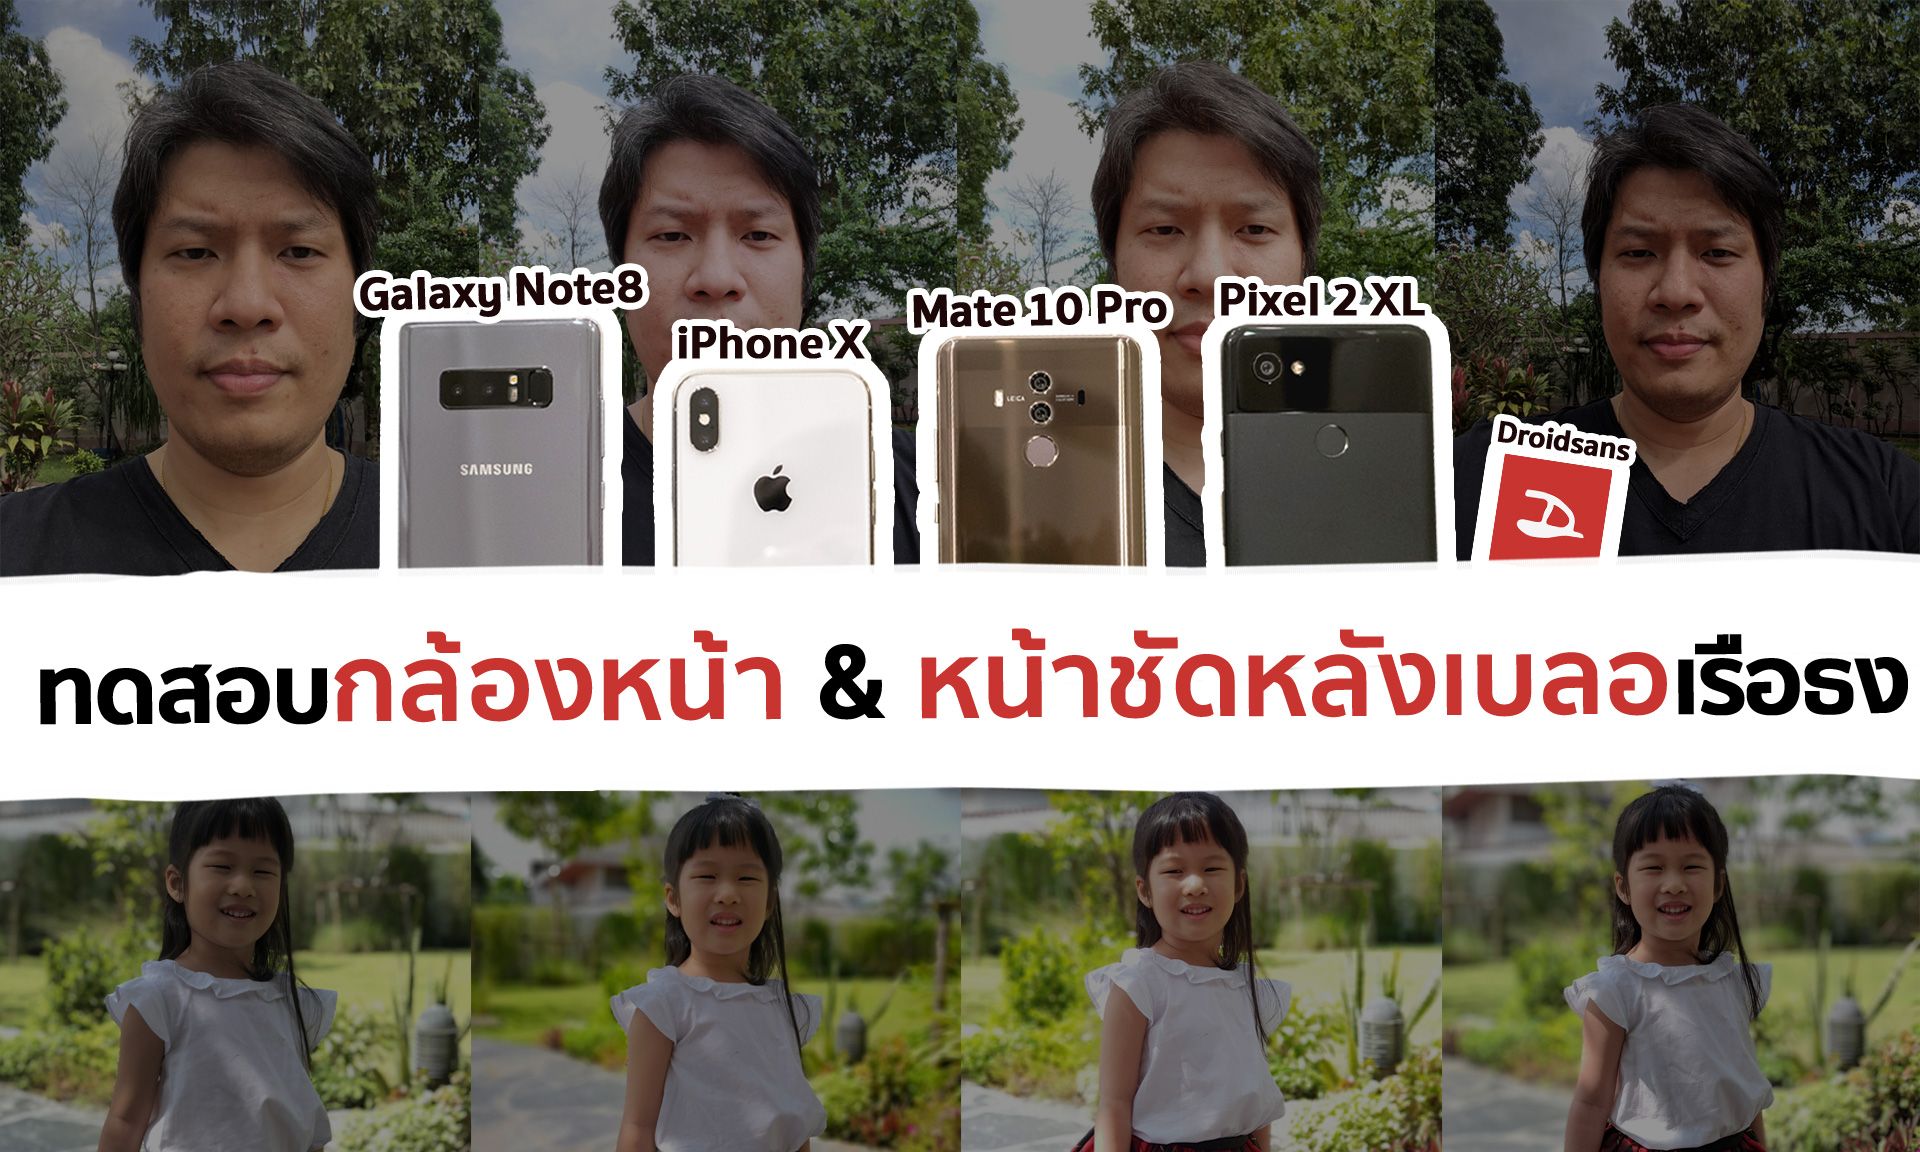 ทดสอบกล้องหน้า & โหมดหน้าชัดหลังเบลอ iPhone X vs Samsung Galaxy Note 8 vs Google Pixel 2 XL vs Huawei Mate 10 Pro